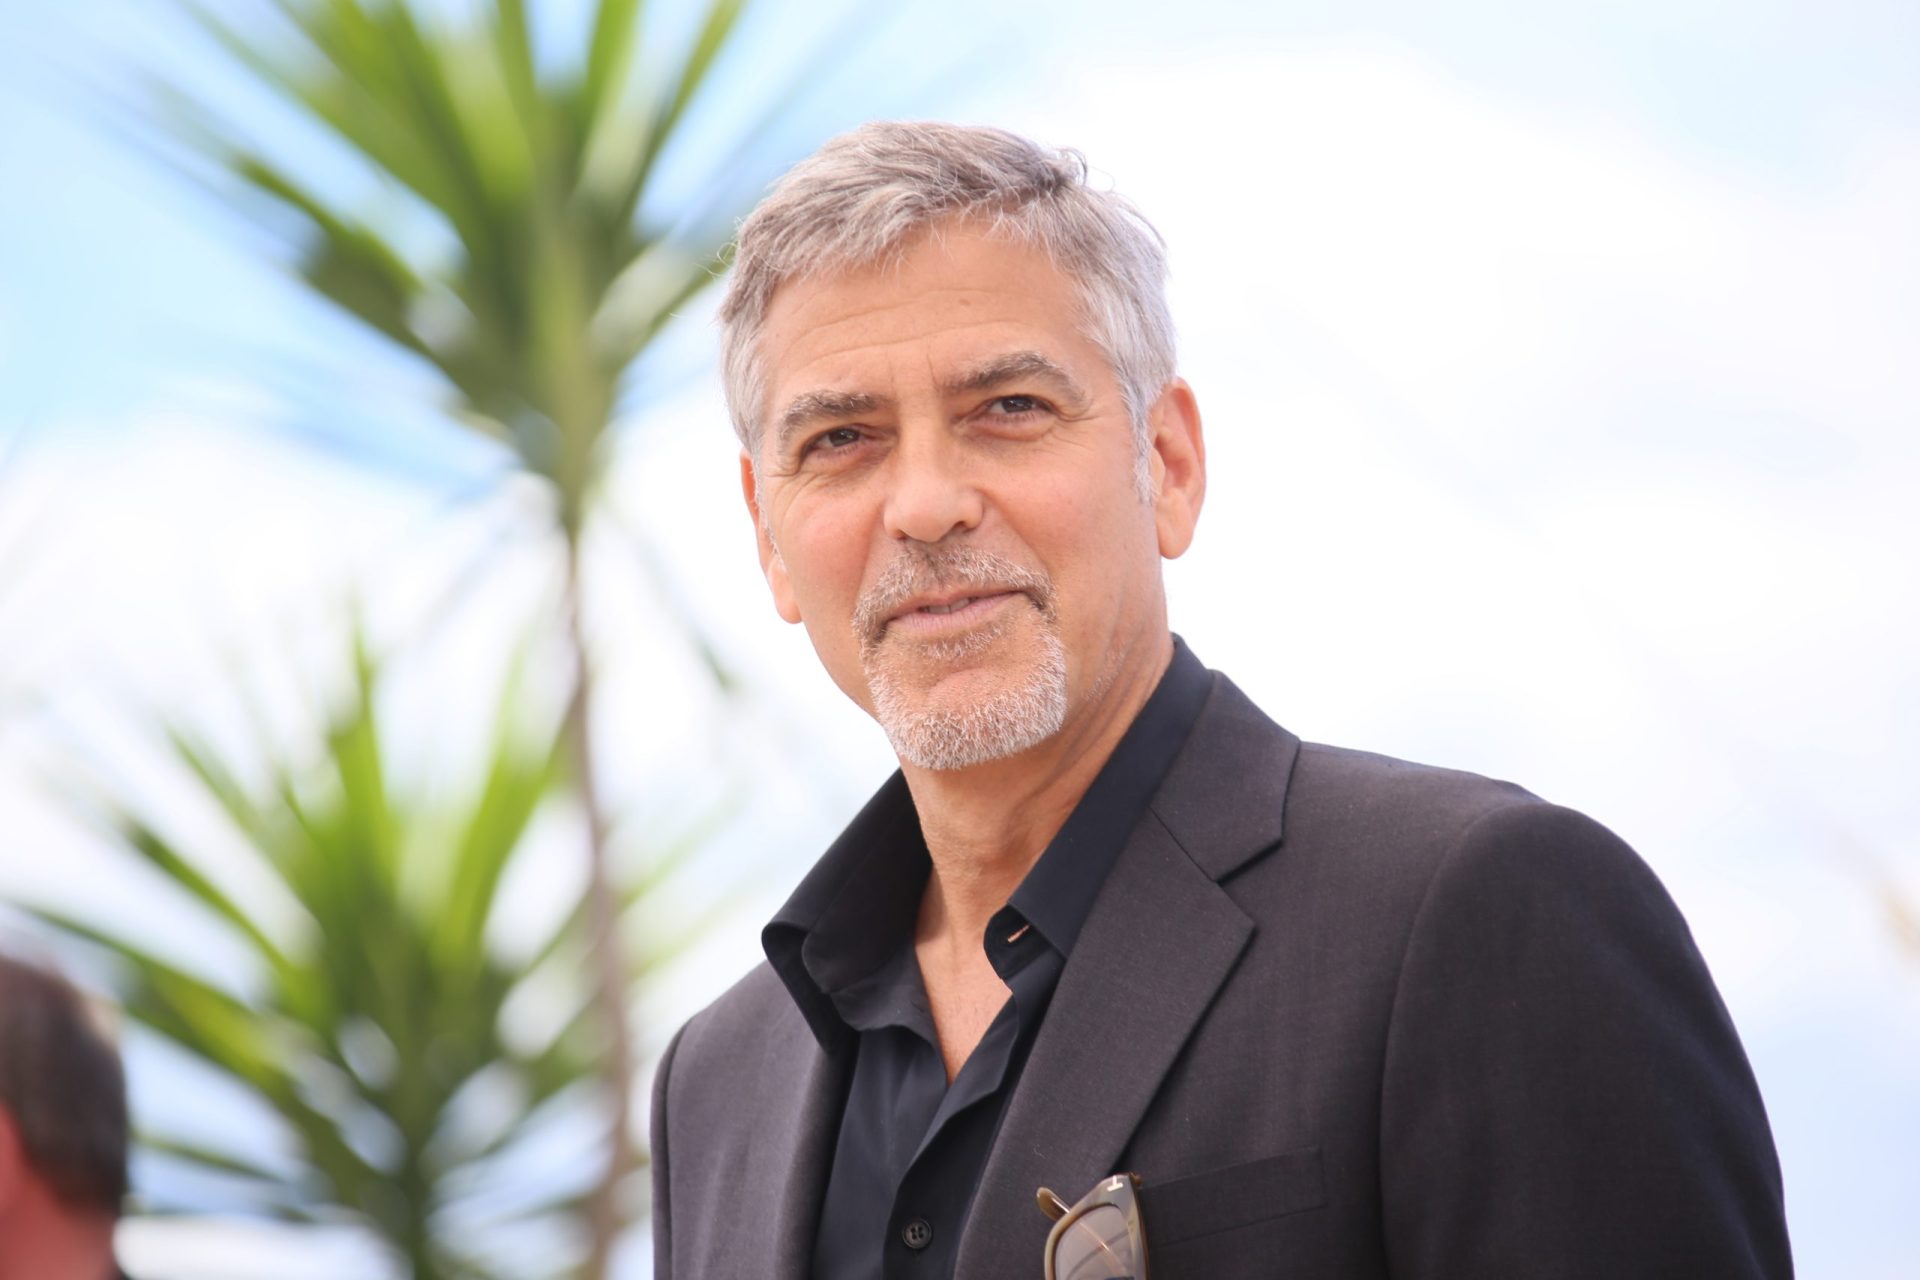 Baby Sussex nasceu no mesmo dia que George Clooney: “Está mesmo a roubar-me o protagonismo”